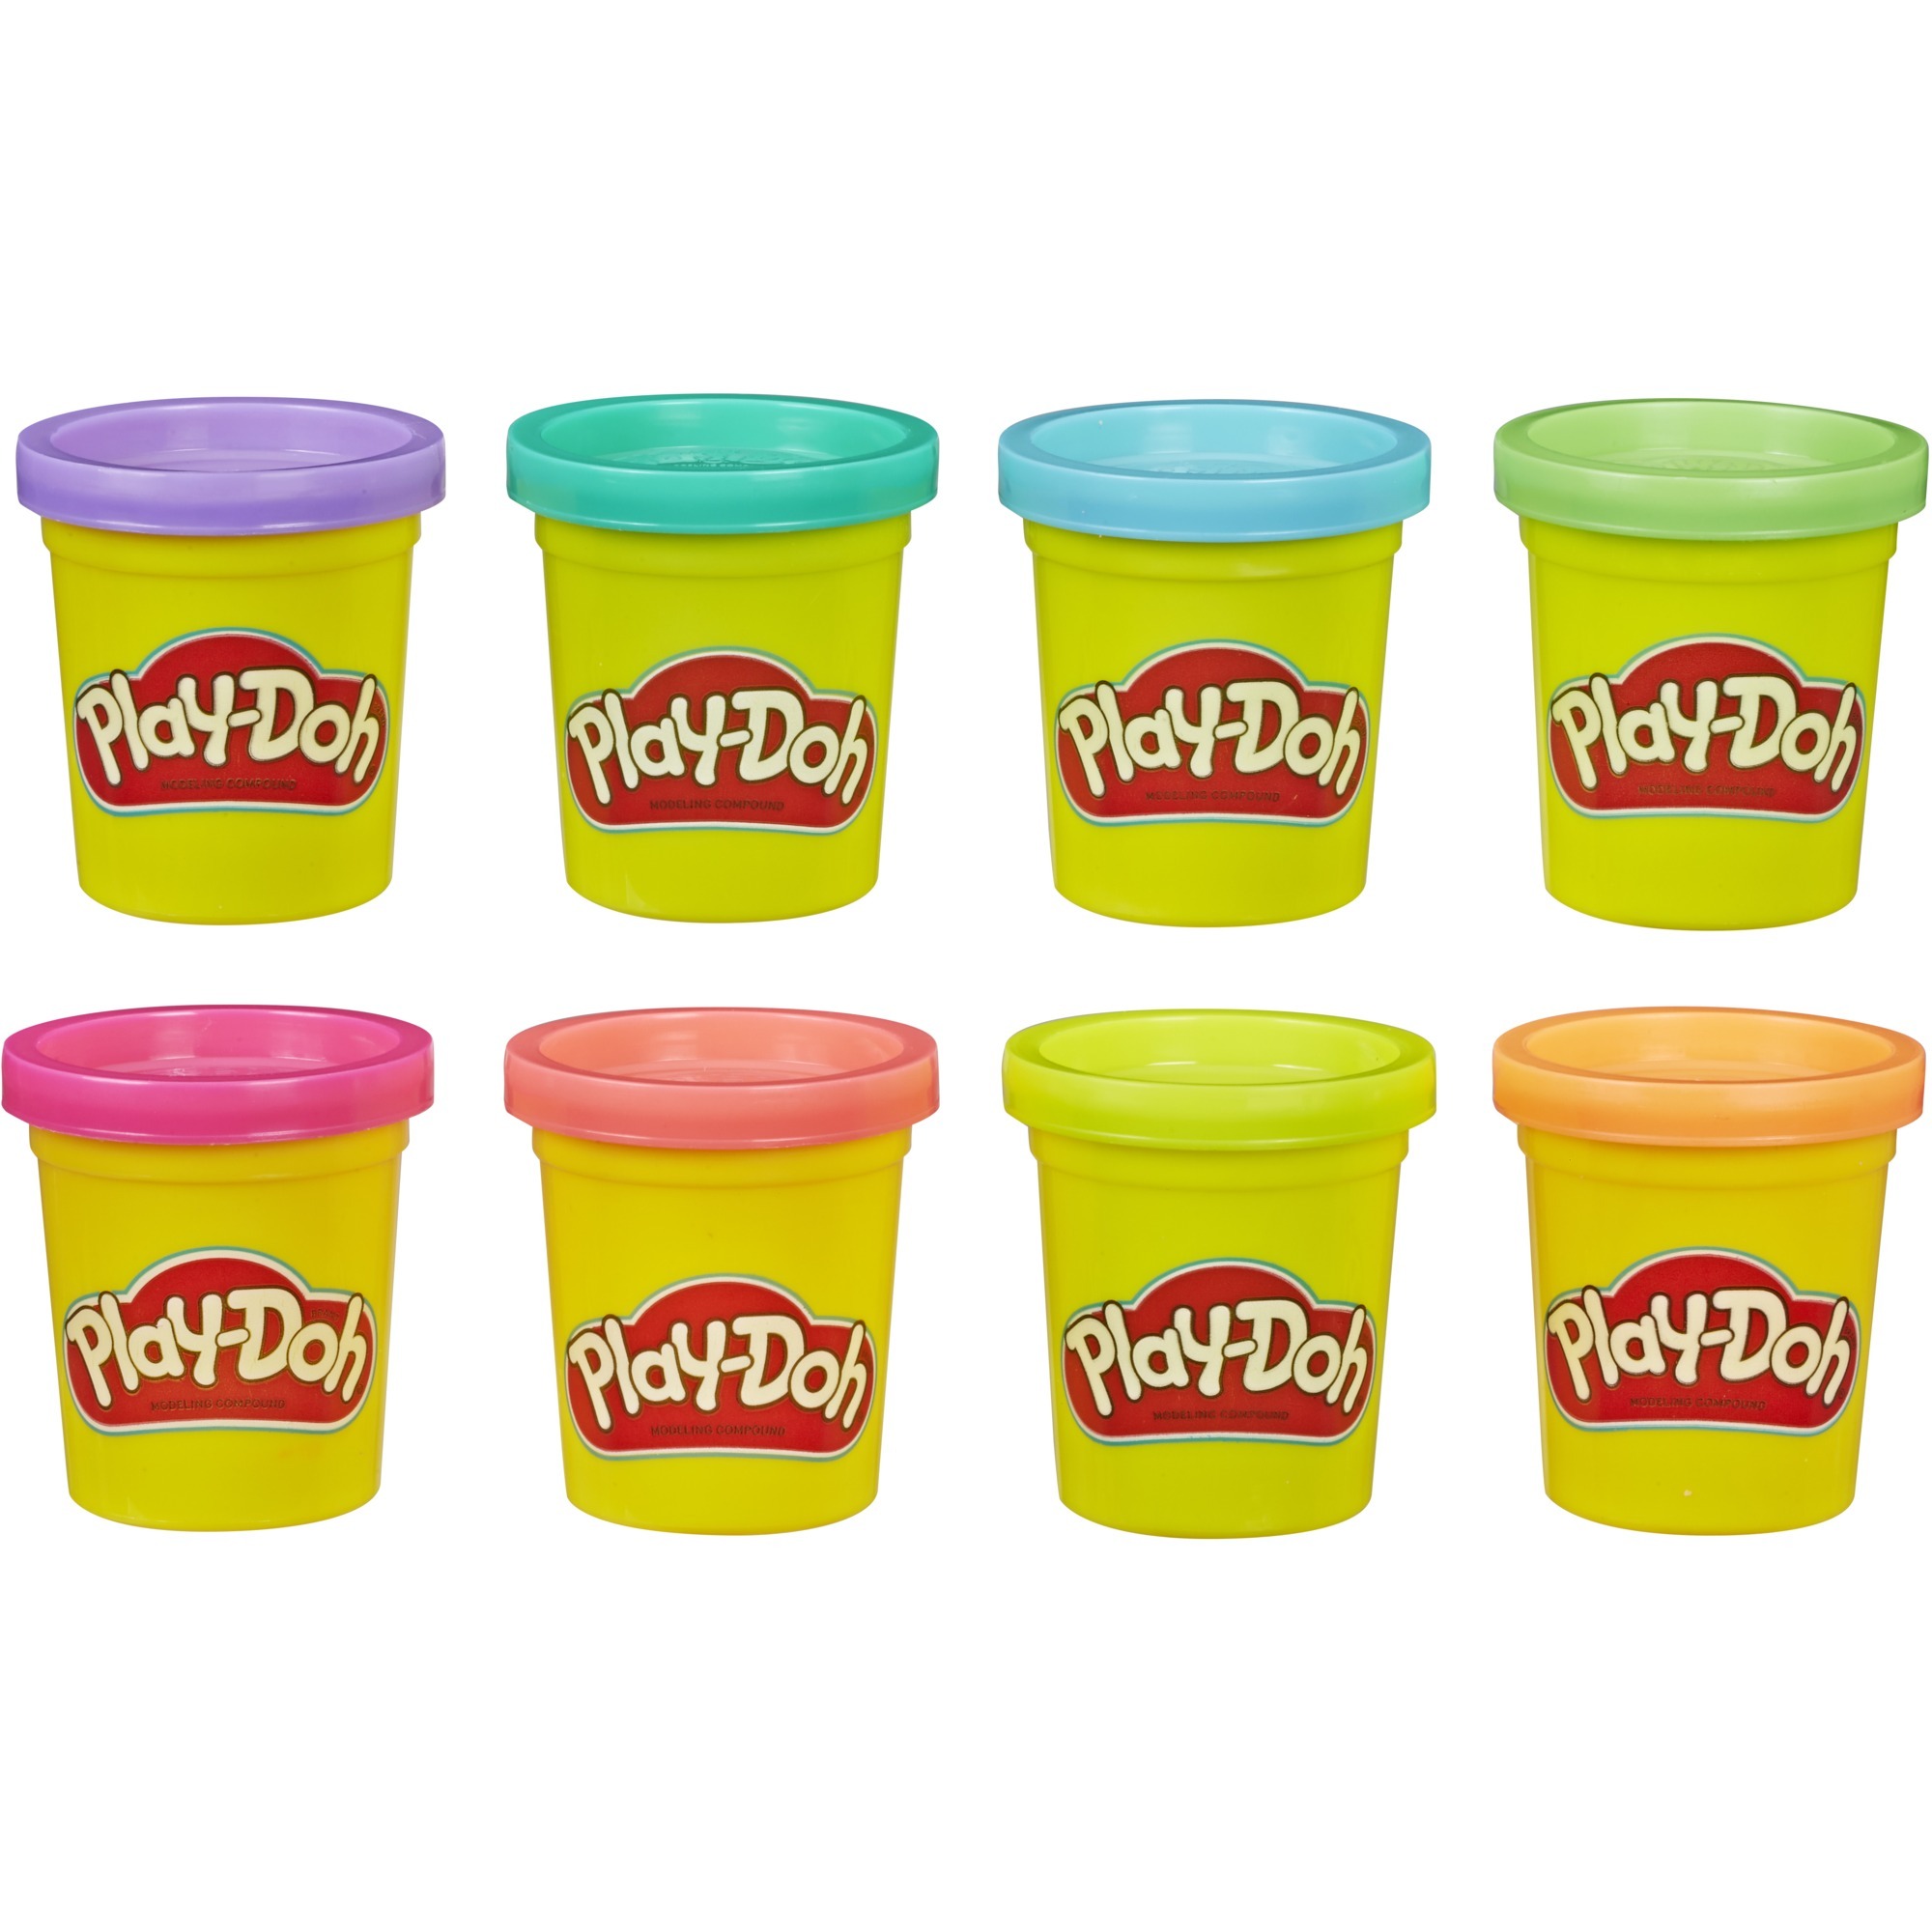 Image of Alternate - Play-Doh 8er-Pack in Neonfarben, Kneten online einkaufen bei Alternate